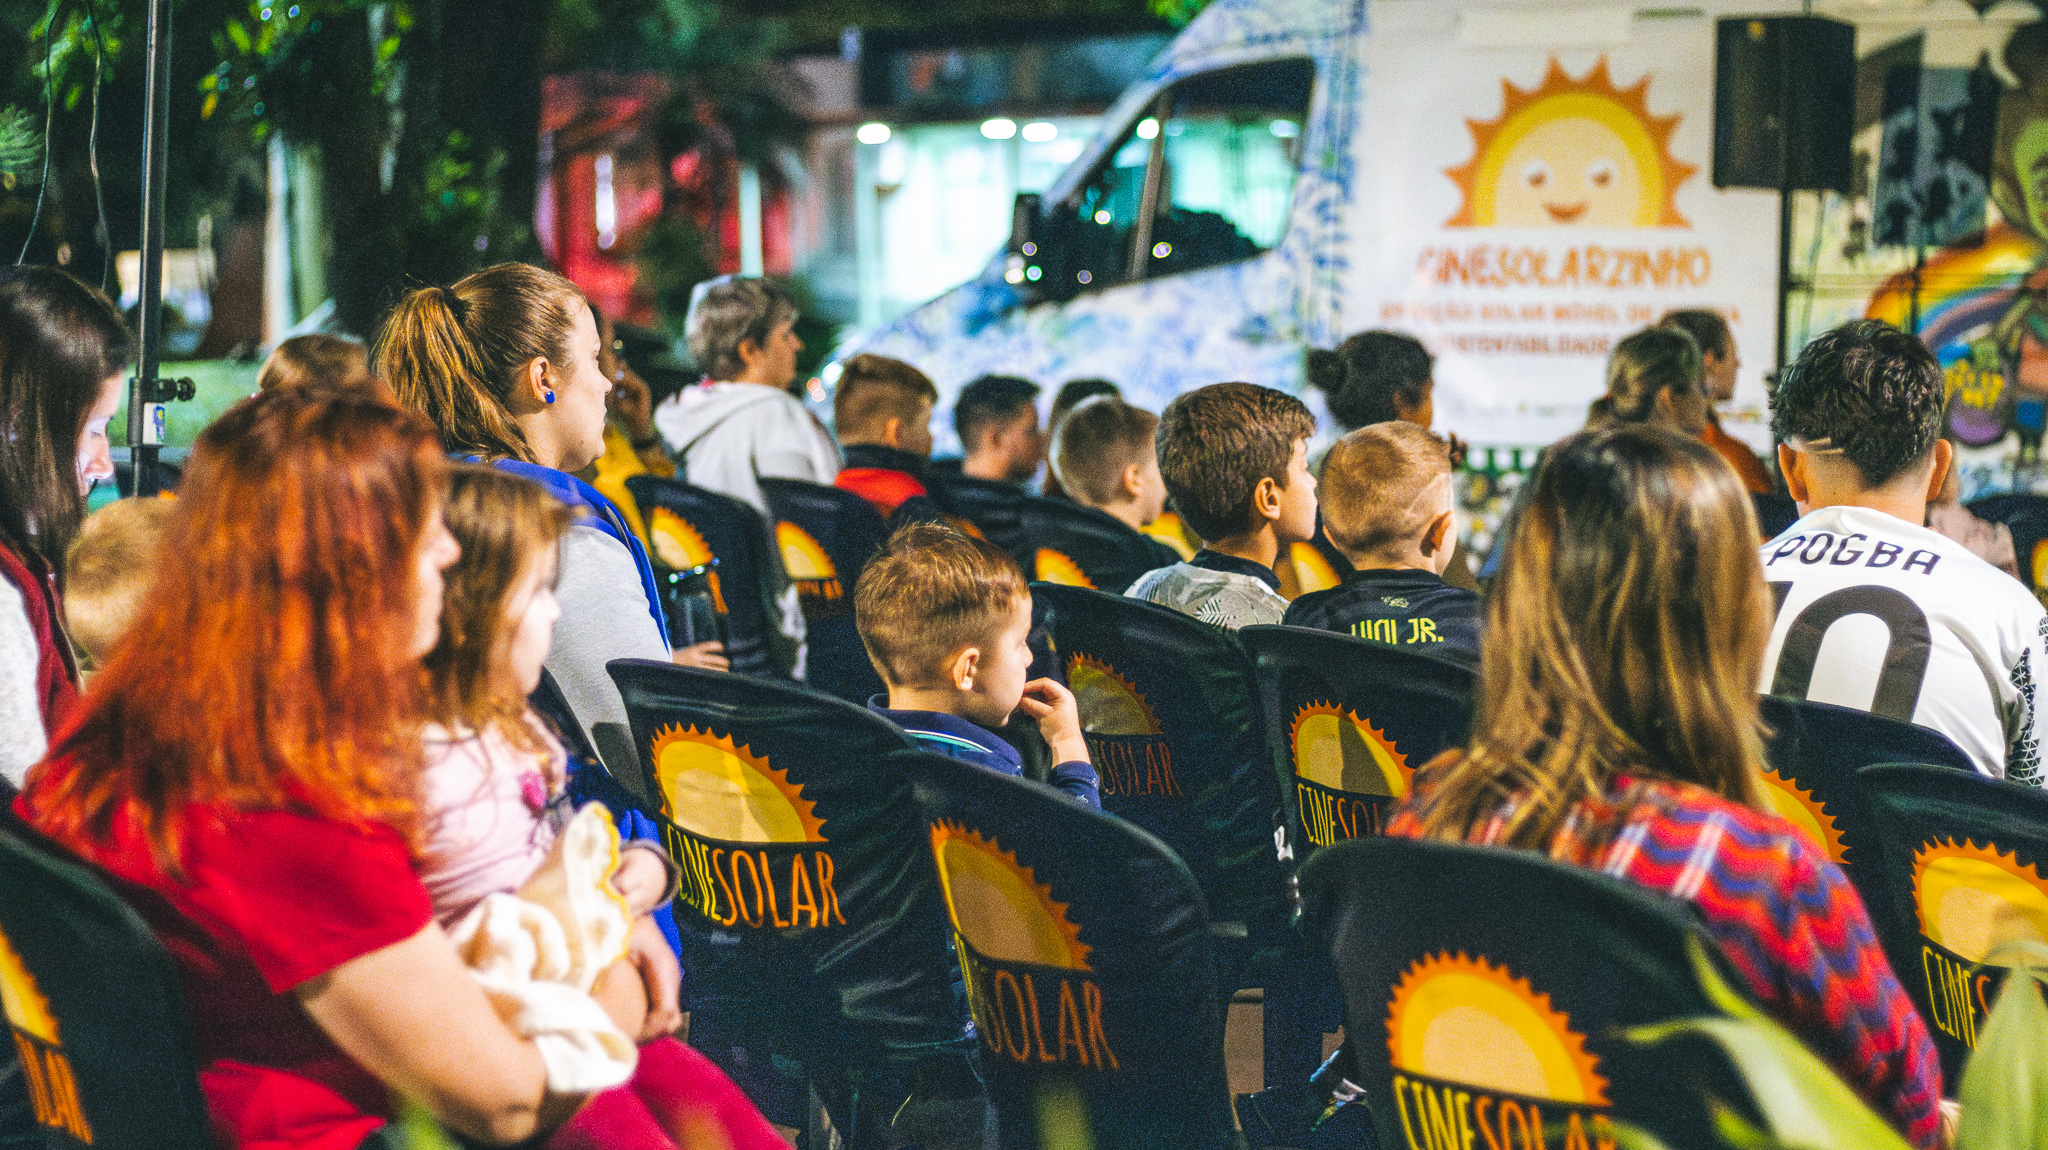 CineSolarzinho: cidades do RN recebem cinema itinerante gratuito com filmes infantis